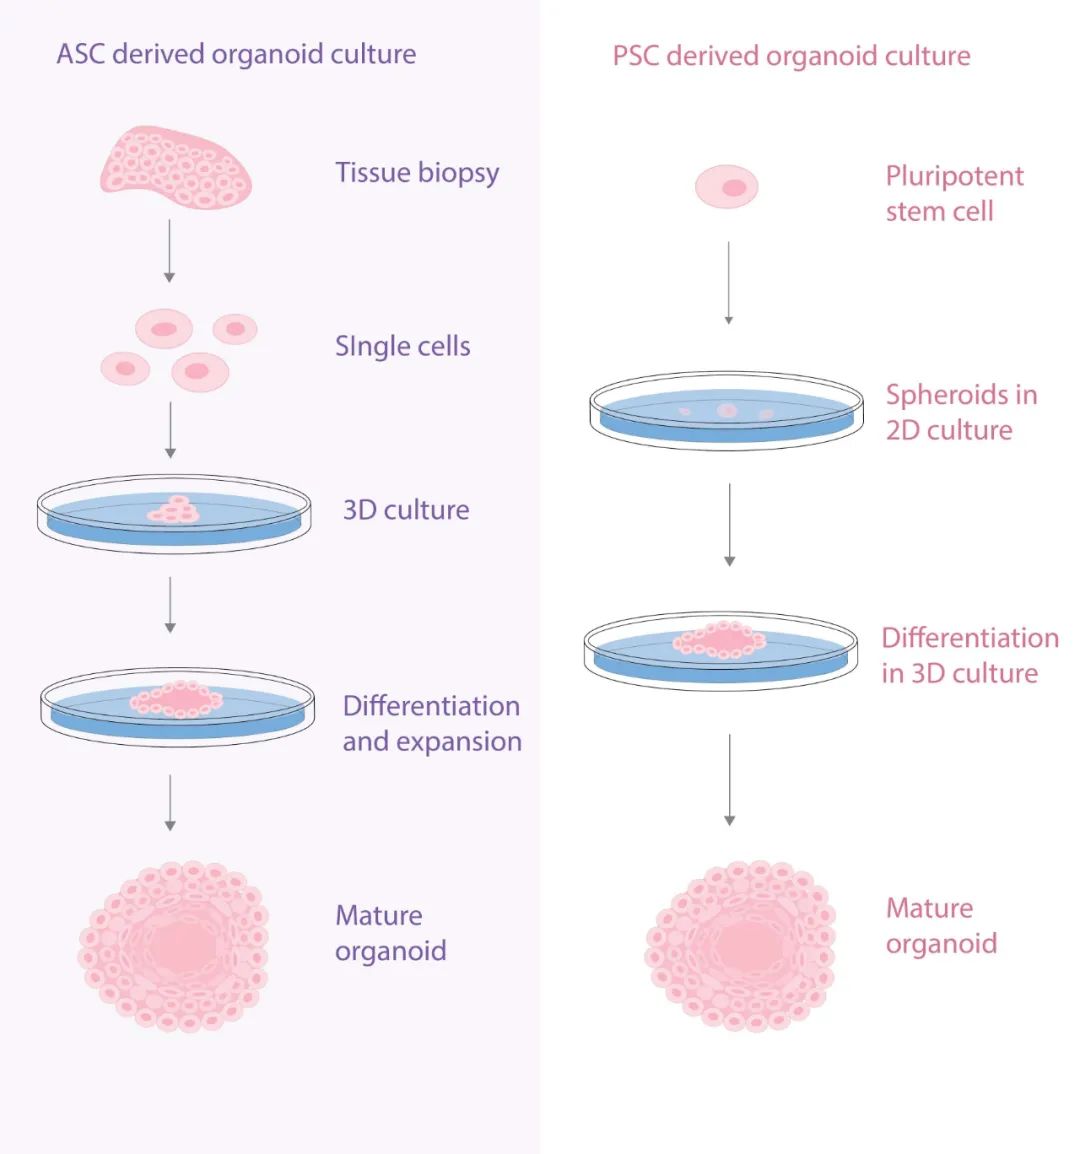 图 1. ASCs 和 PSCs 衍生的类器官培养方案[1]A: 源于 ASCs 的类器官：原发组织活检或切除组织制备成单细胞悬液，然后立即嵌入细胞外基质 (ECM) 中，随着组织的生长而变化，添加并定期改变培养基中的多种生长因子，直到类器官扩大 (Expanded)。B: 源于 PSCs 衍生的类器官：PSCs 的 2D 干细胞培养物 (球状体) 被嵌入细胞外基质，在 3D 培养基根据最终需要的组织类型的特定分化信号进行培养。